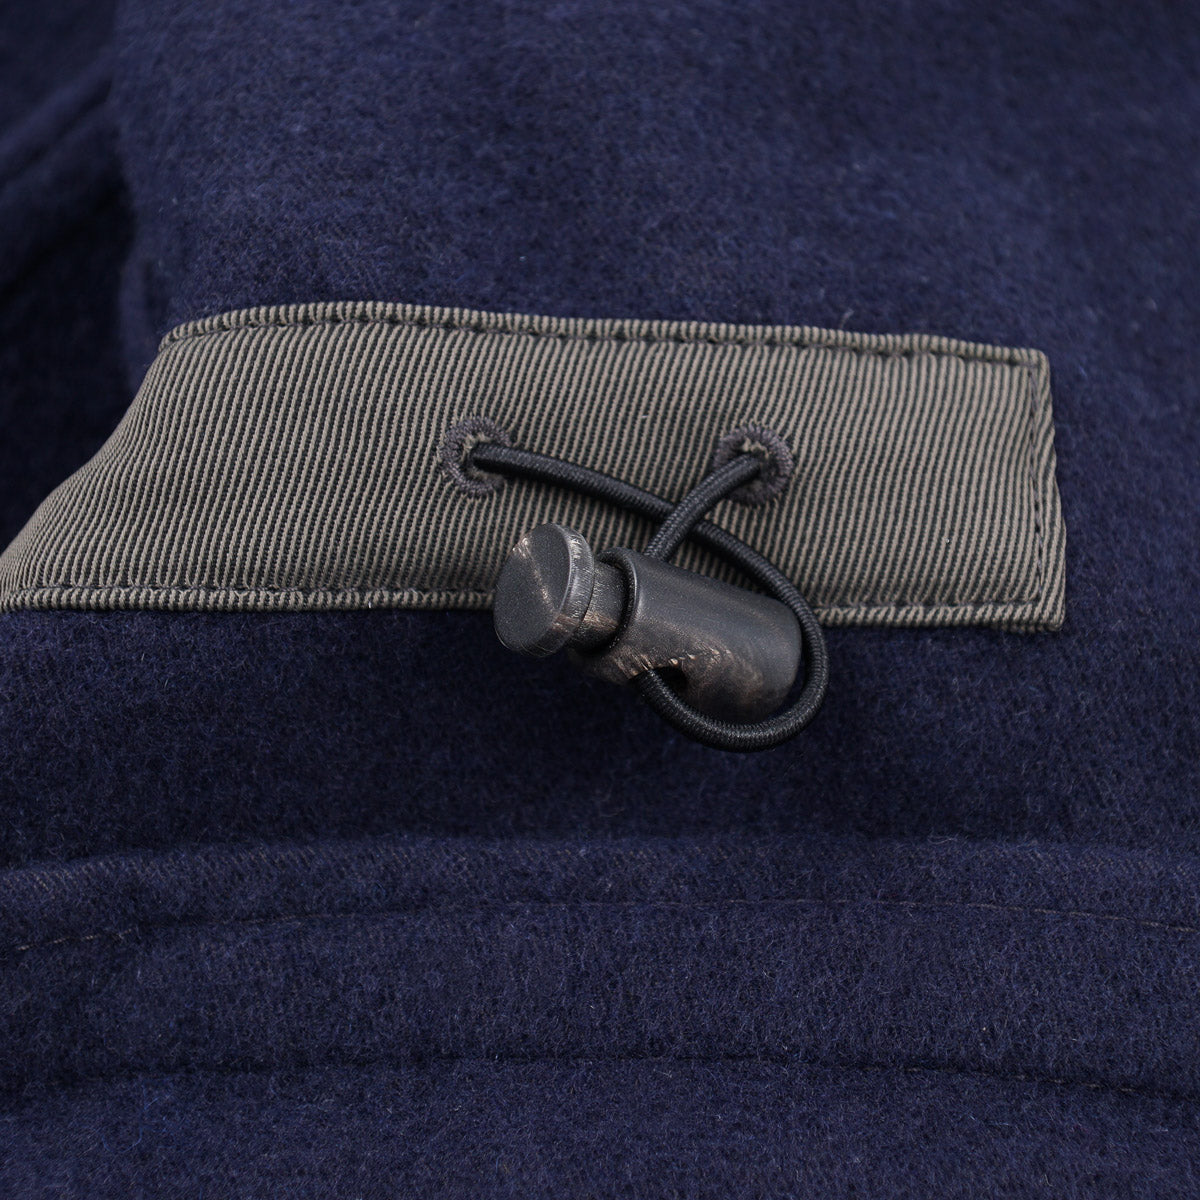 Boglioli Flannel-Lined Technical Field Jacket - Top Shelf Apparel